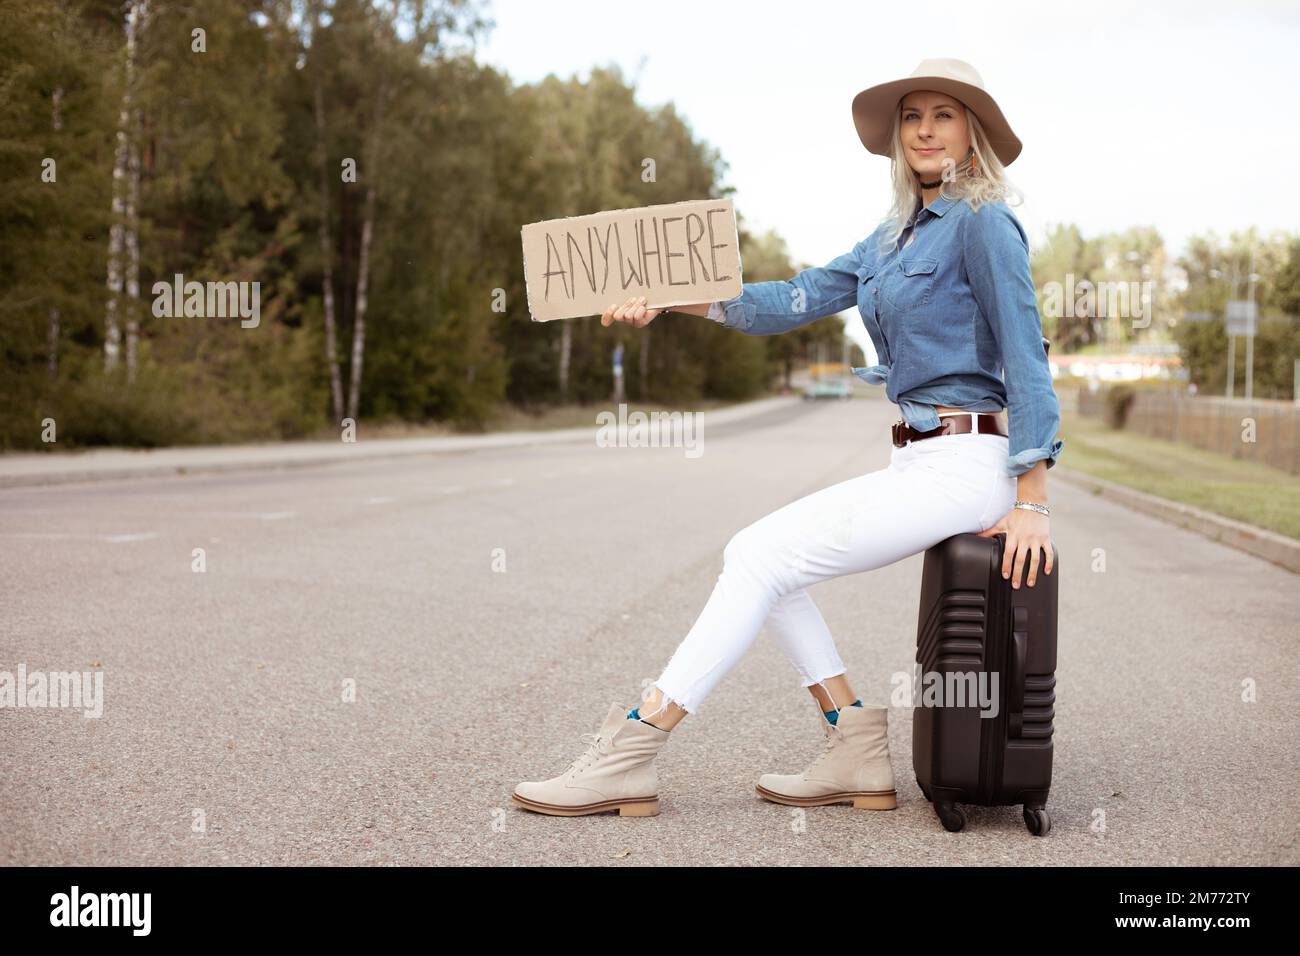 Eine nette Frau versucht aufzuhören, vorbeizufahren, indem sie auf einem Koffer mit einem ausgestreckten Pappposter auf einem leeren Highway sitzt. Frau mit Hut, entfliehen Sie der Stadt, um zu gehen Stockfoto